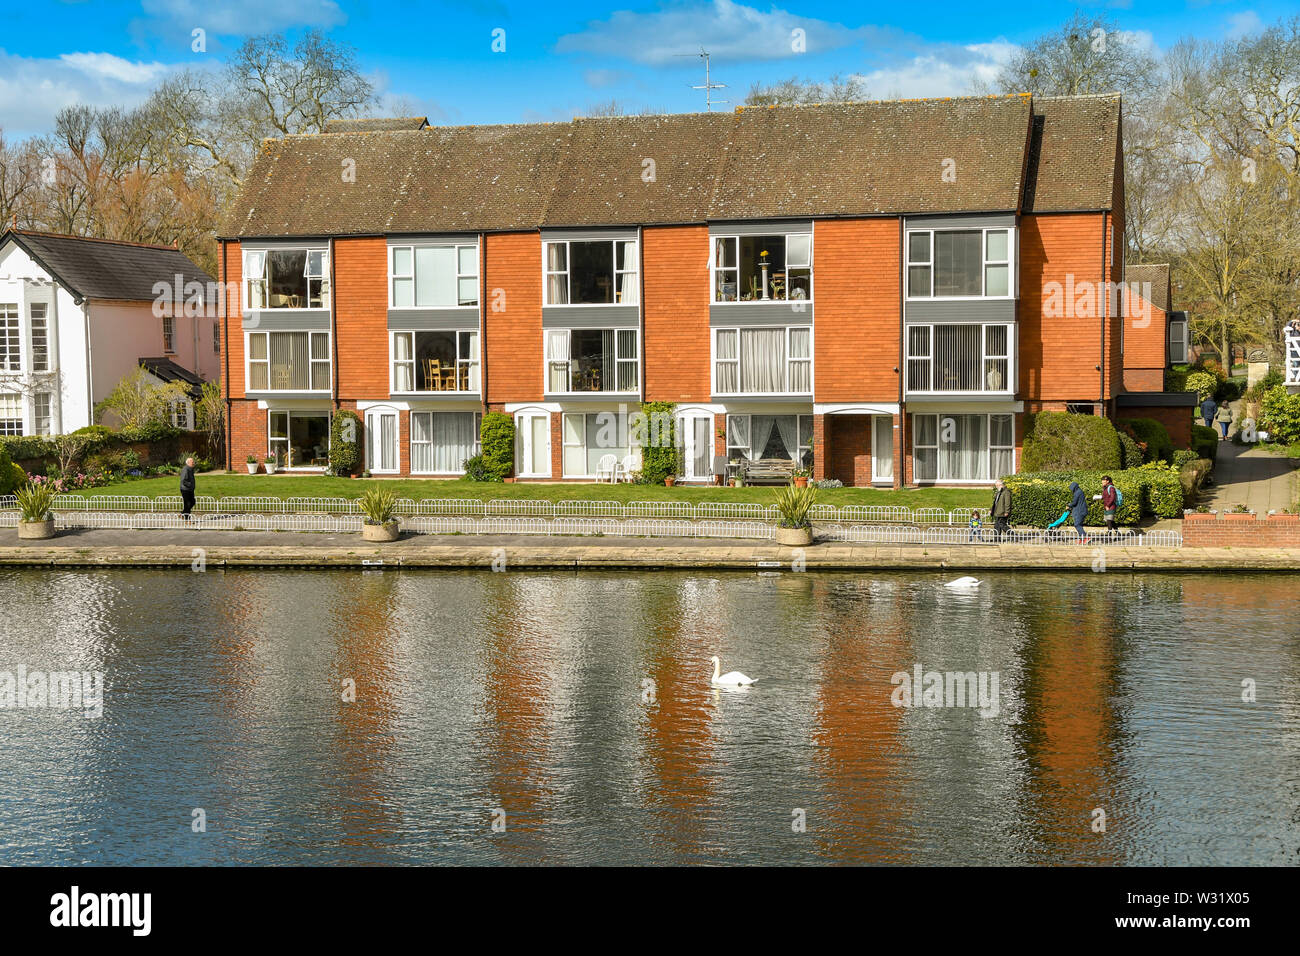 MARLOW, ENGLAND - MÄRZ 2019: Baustein der modernen Wohnungen am Ufer der Themse in Marlow. Stockfoto